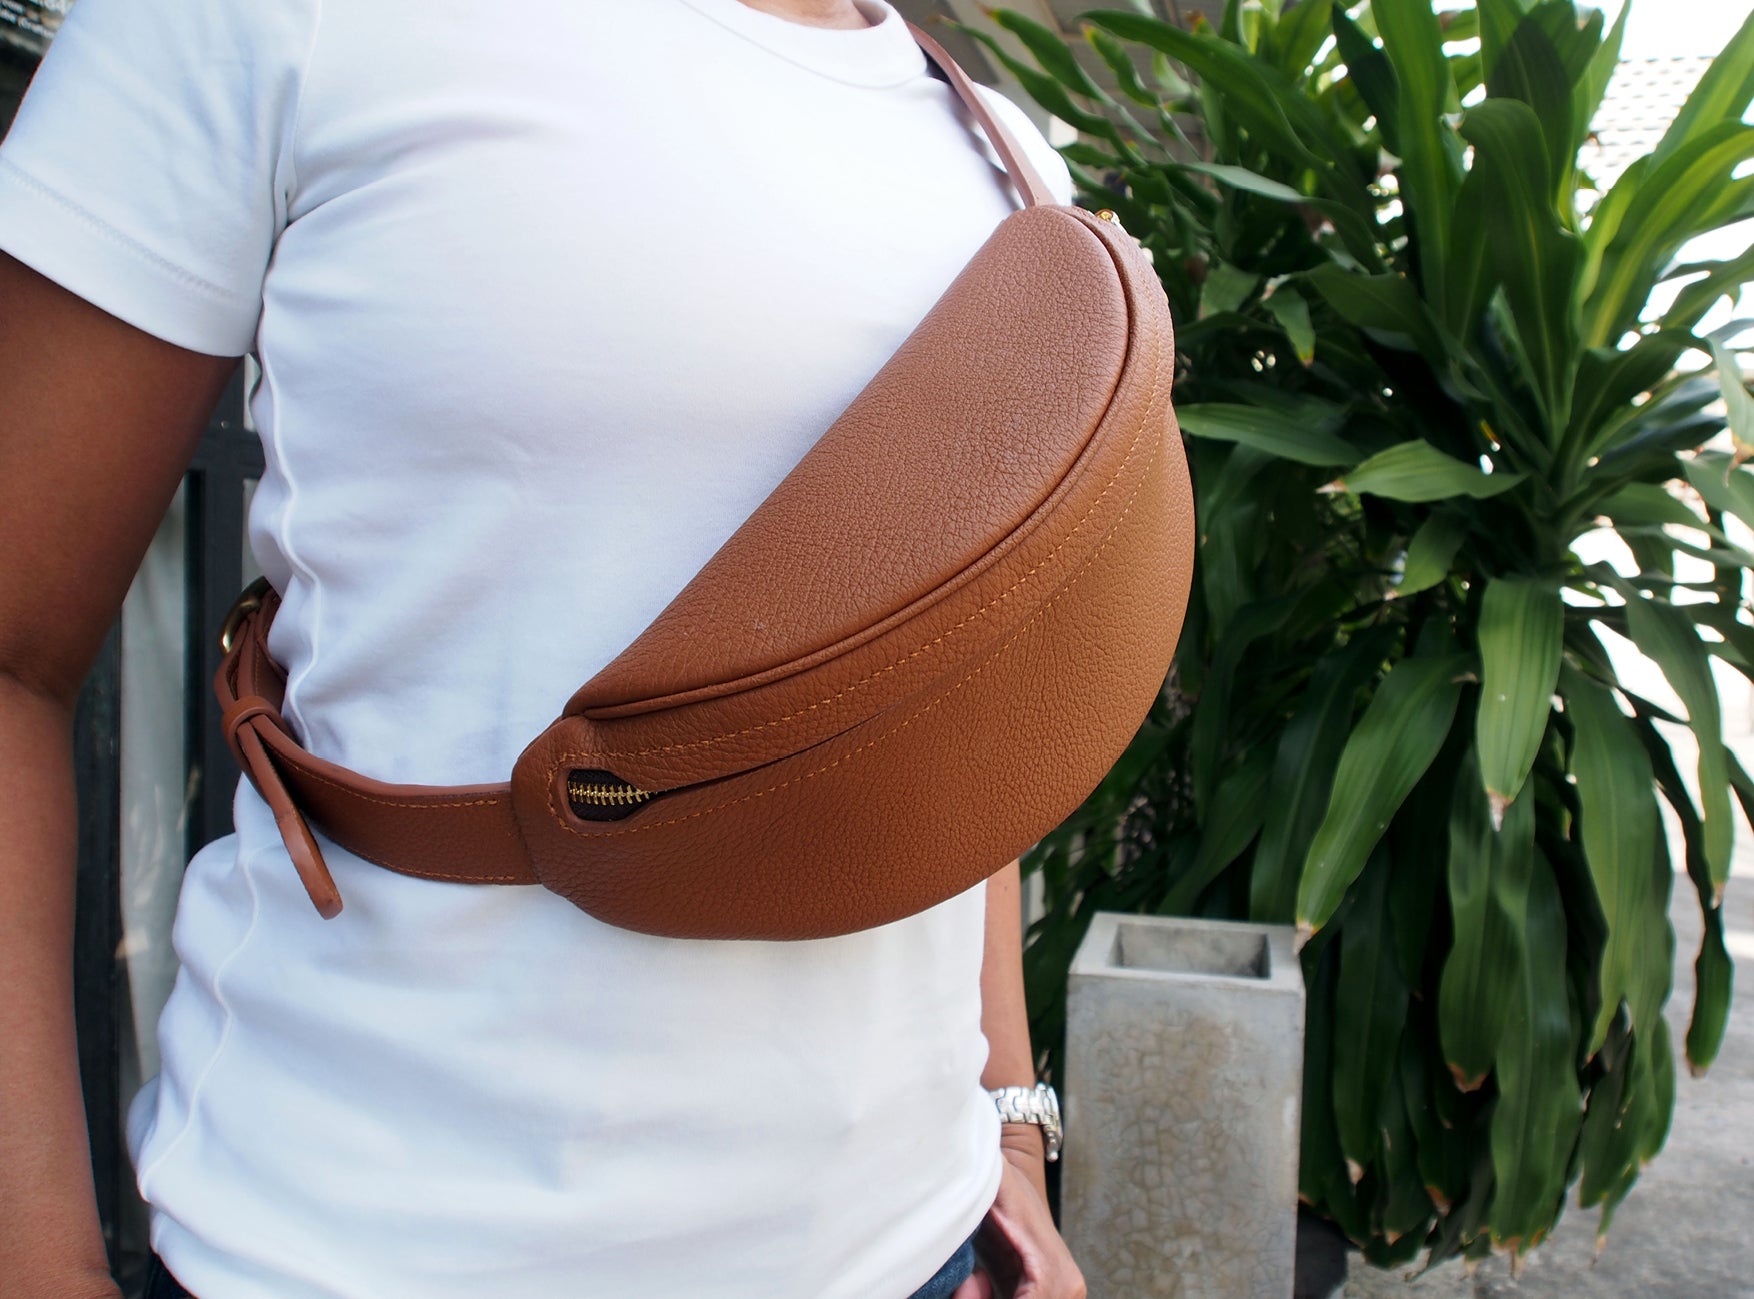 Fanny Pack/ Belt Bag Pattern